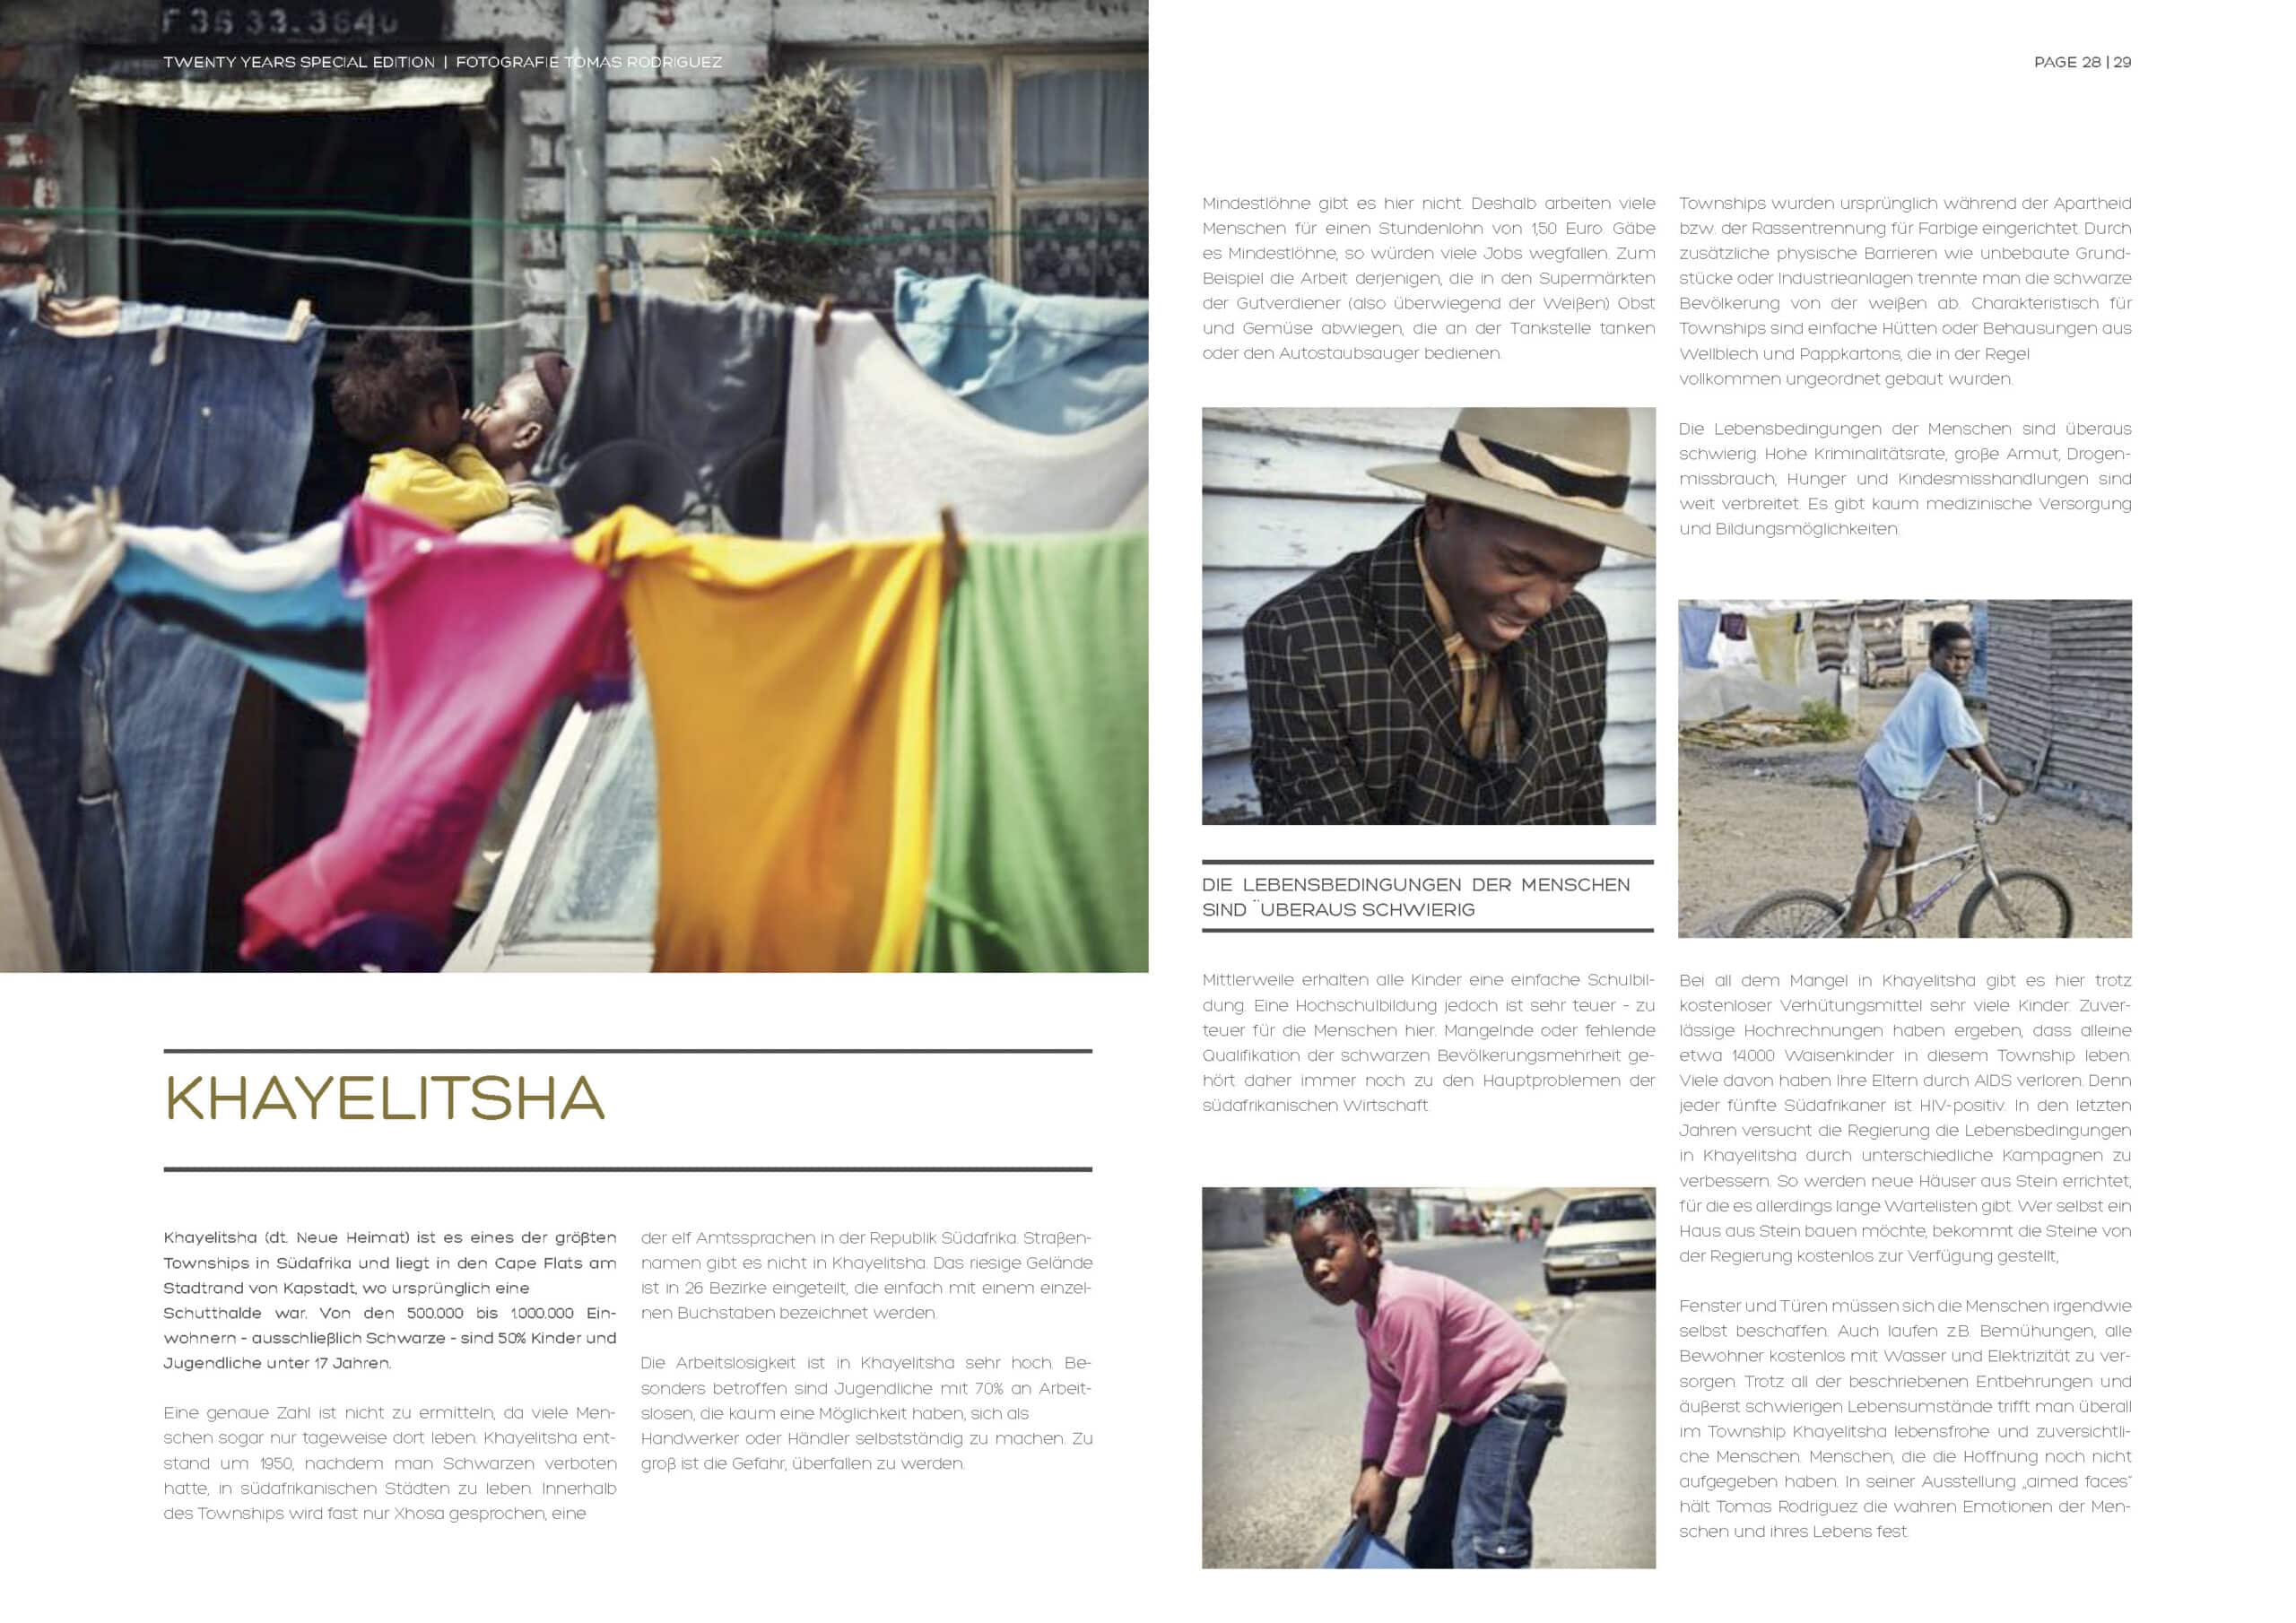 Eine Collage in einer Zeitschriftenstrecke mit Bildern einer lebendigen Township-Szene; auf einem ist ein Kind zu sehen, das fröhlich zwischen hängender Wäsche spielt, auf dem anderen ein Mann, der einen Einkaufswagen über eine staubige Straße schiebt. © Fotografie Tomas Rodriguez